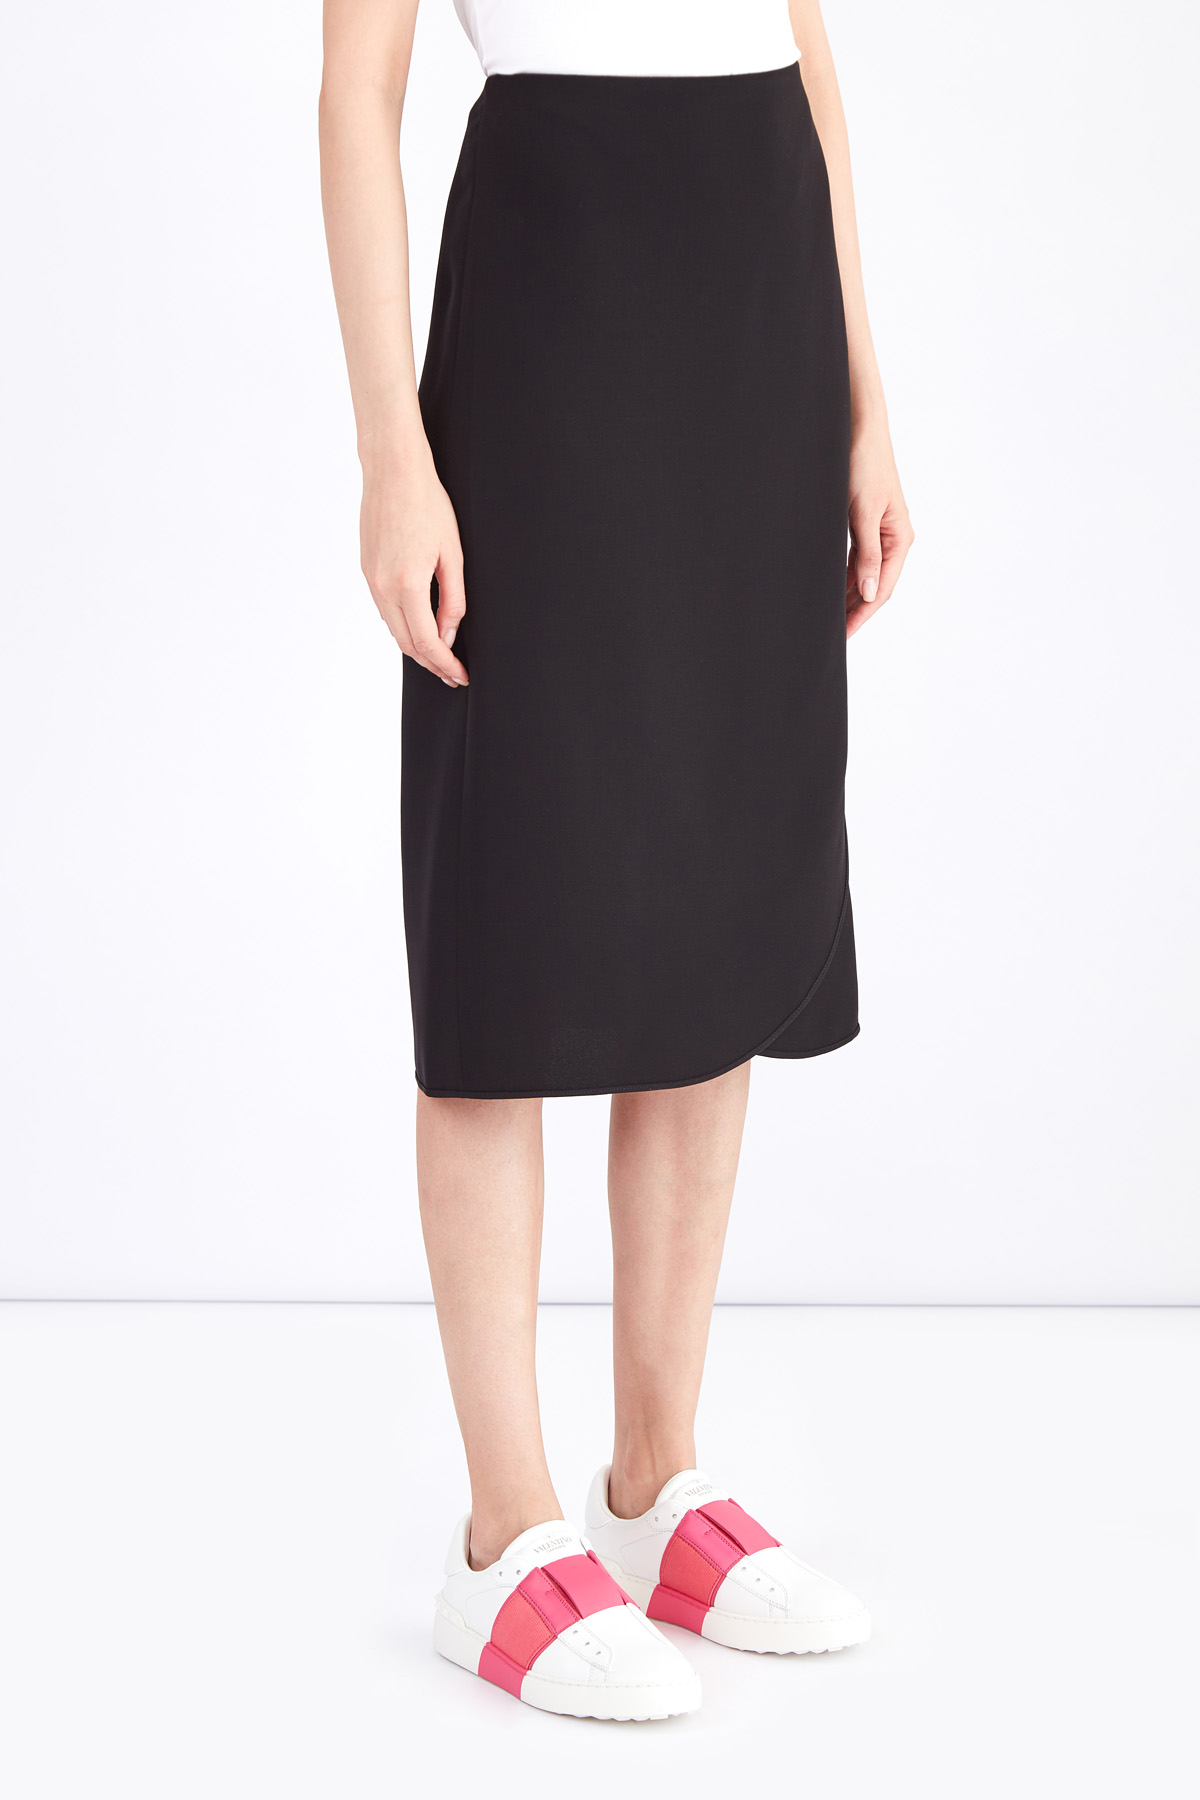 Минималистичная юбка на запах из черного шелка VALENTINO, цвет черный, размер 40 - фото 3